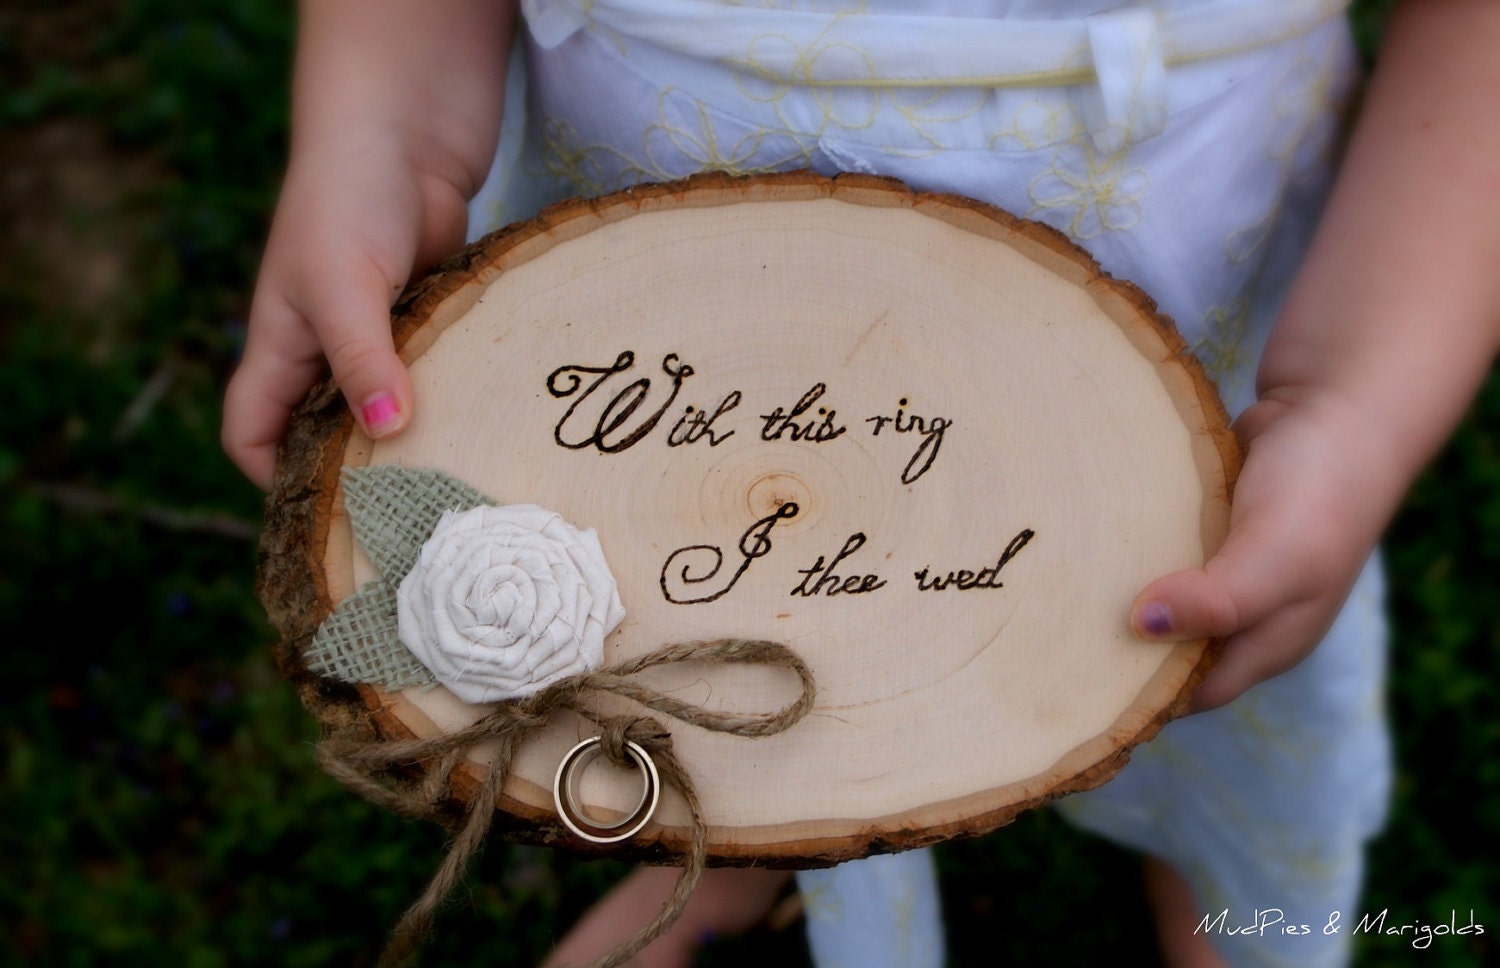 Слова на свадьбу дерево. Деревянная свадьба. Свадебные кольца на спиле дерева. Подарок на деревянную свадьбу. Деревянная свадьба декор.